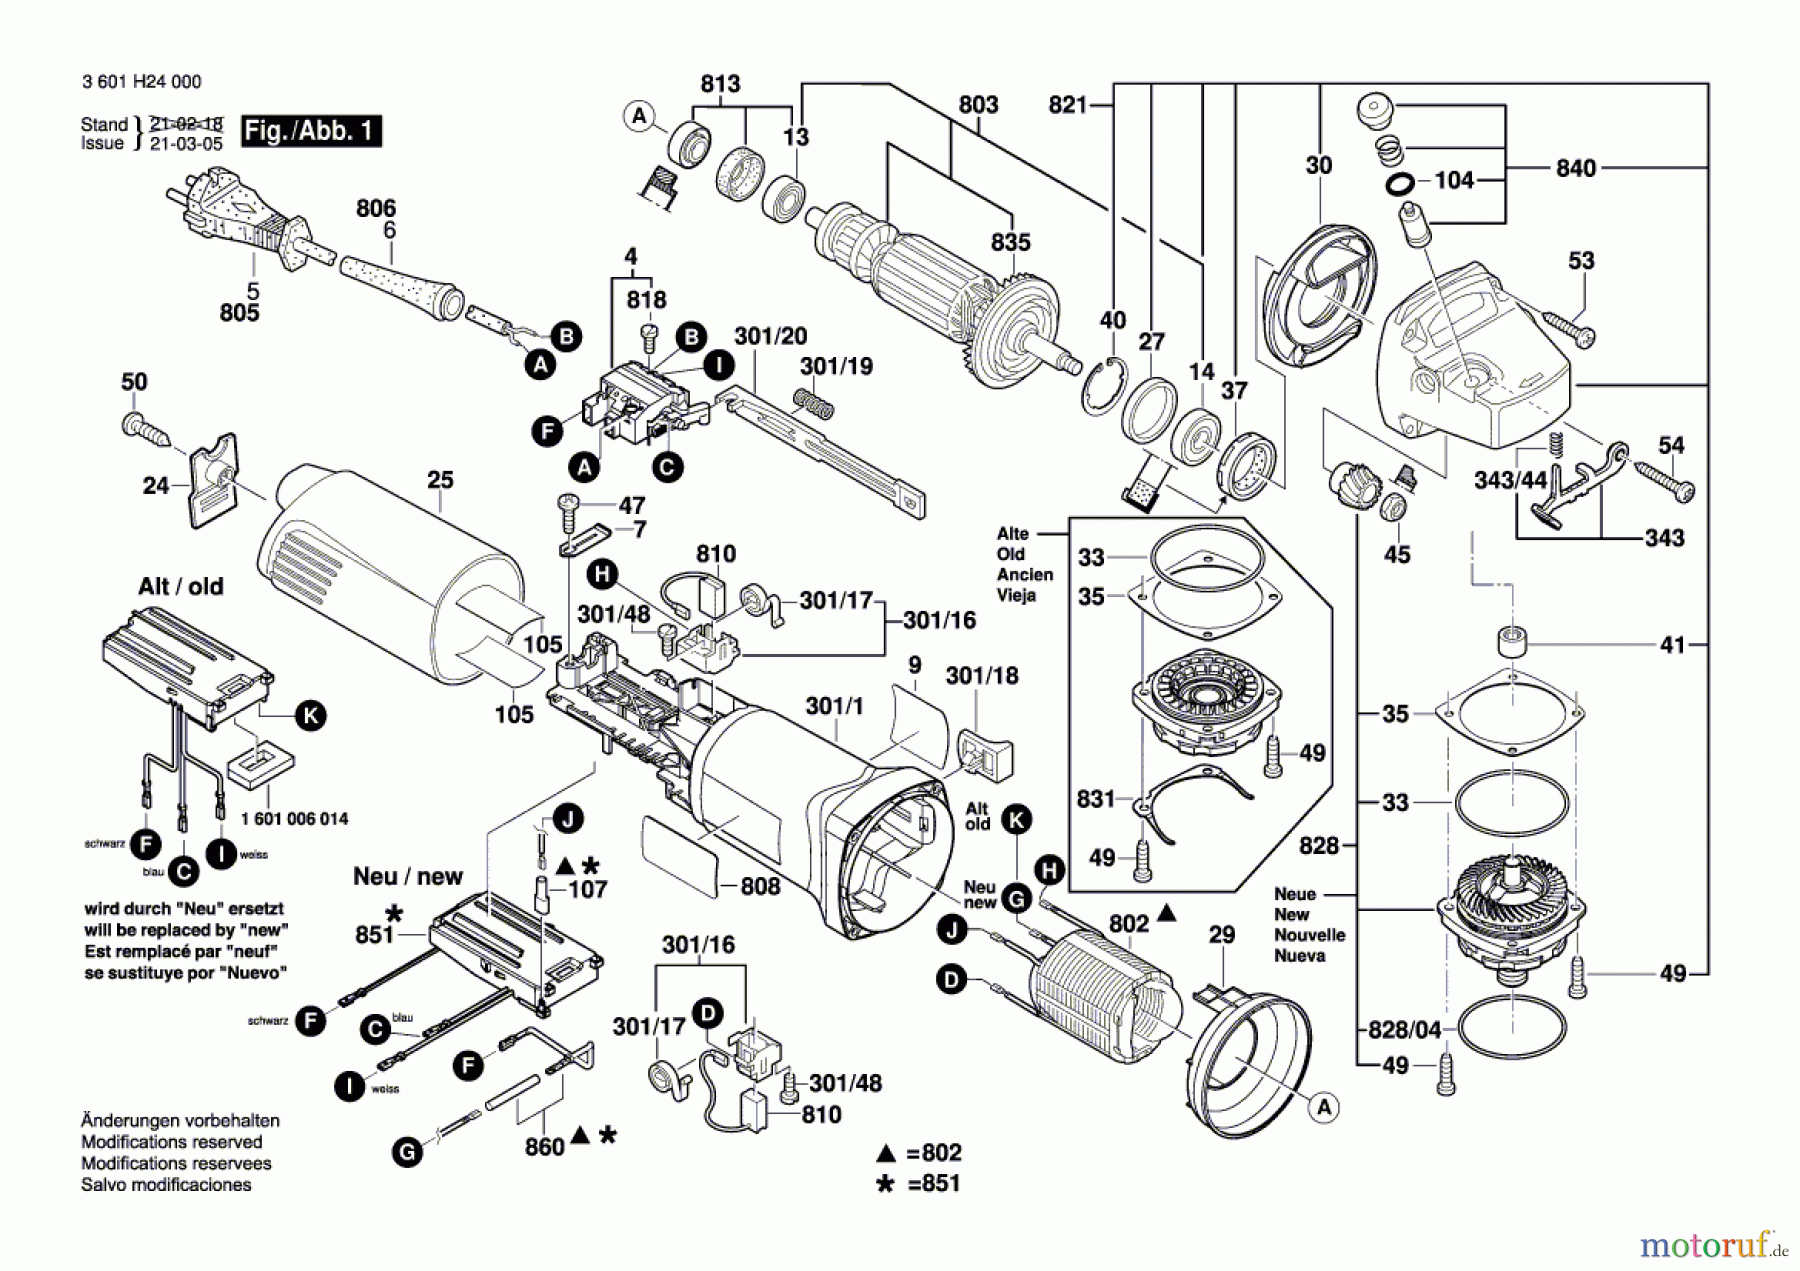  Bosch Werkzeug Winkelschleifer GWS 14-125 CIE Seite 1